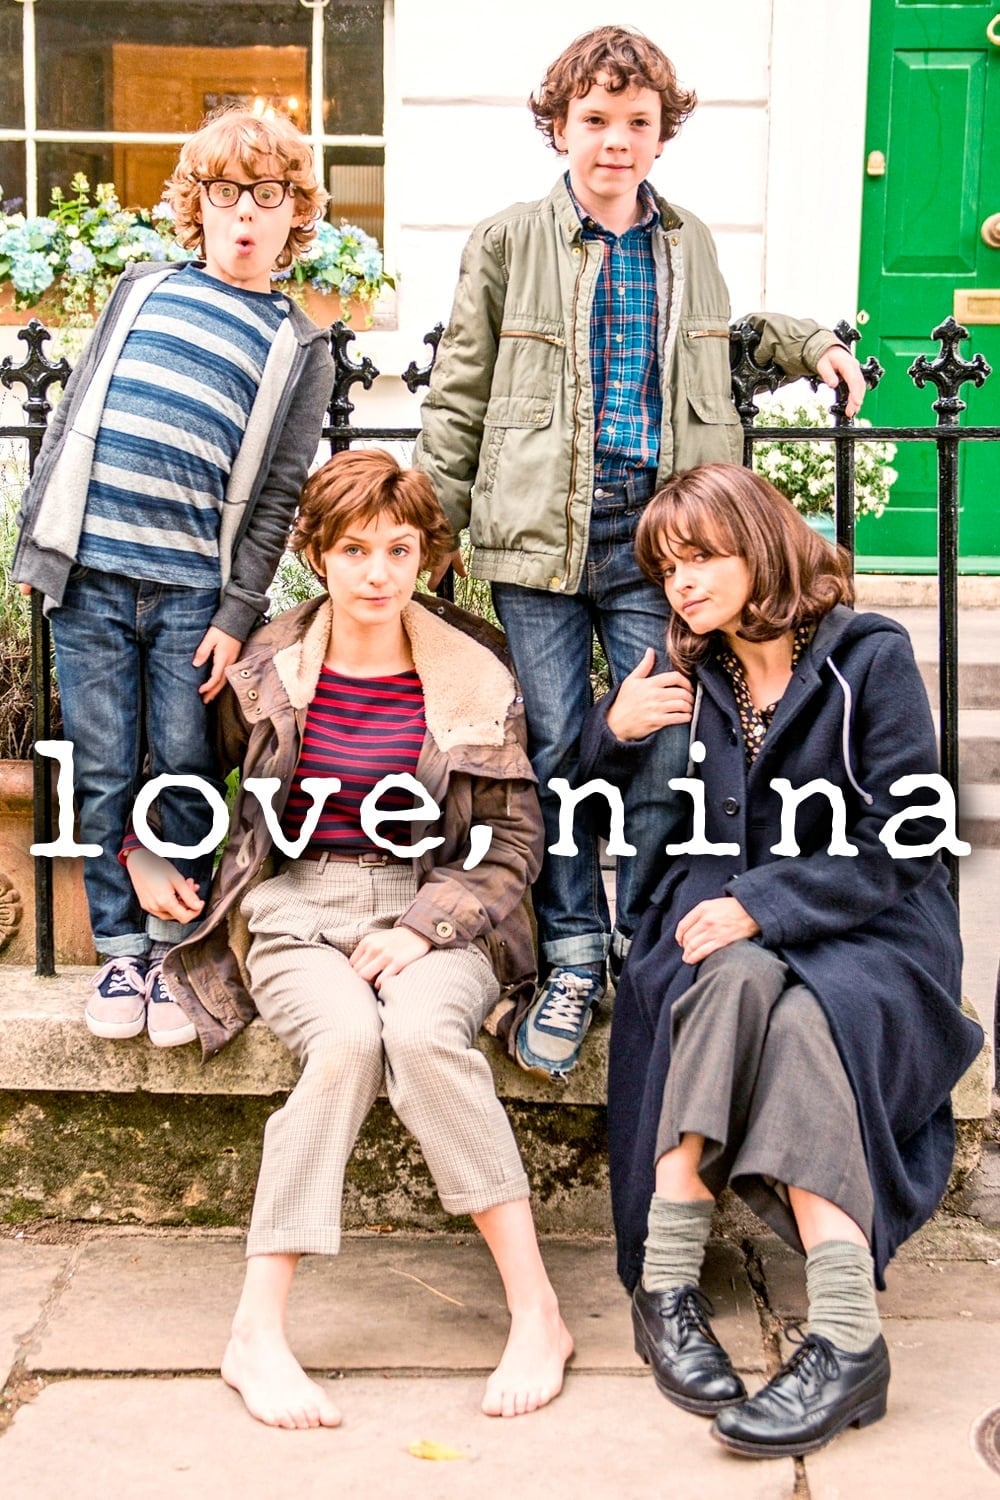 Love, Nina (2016)